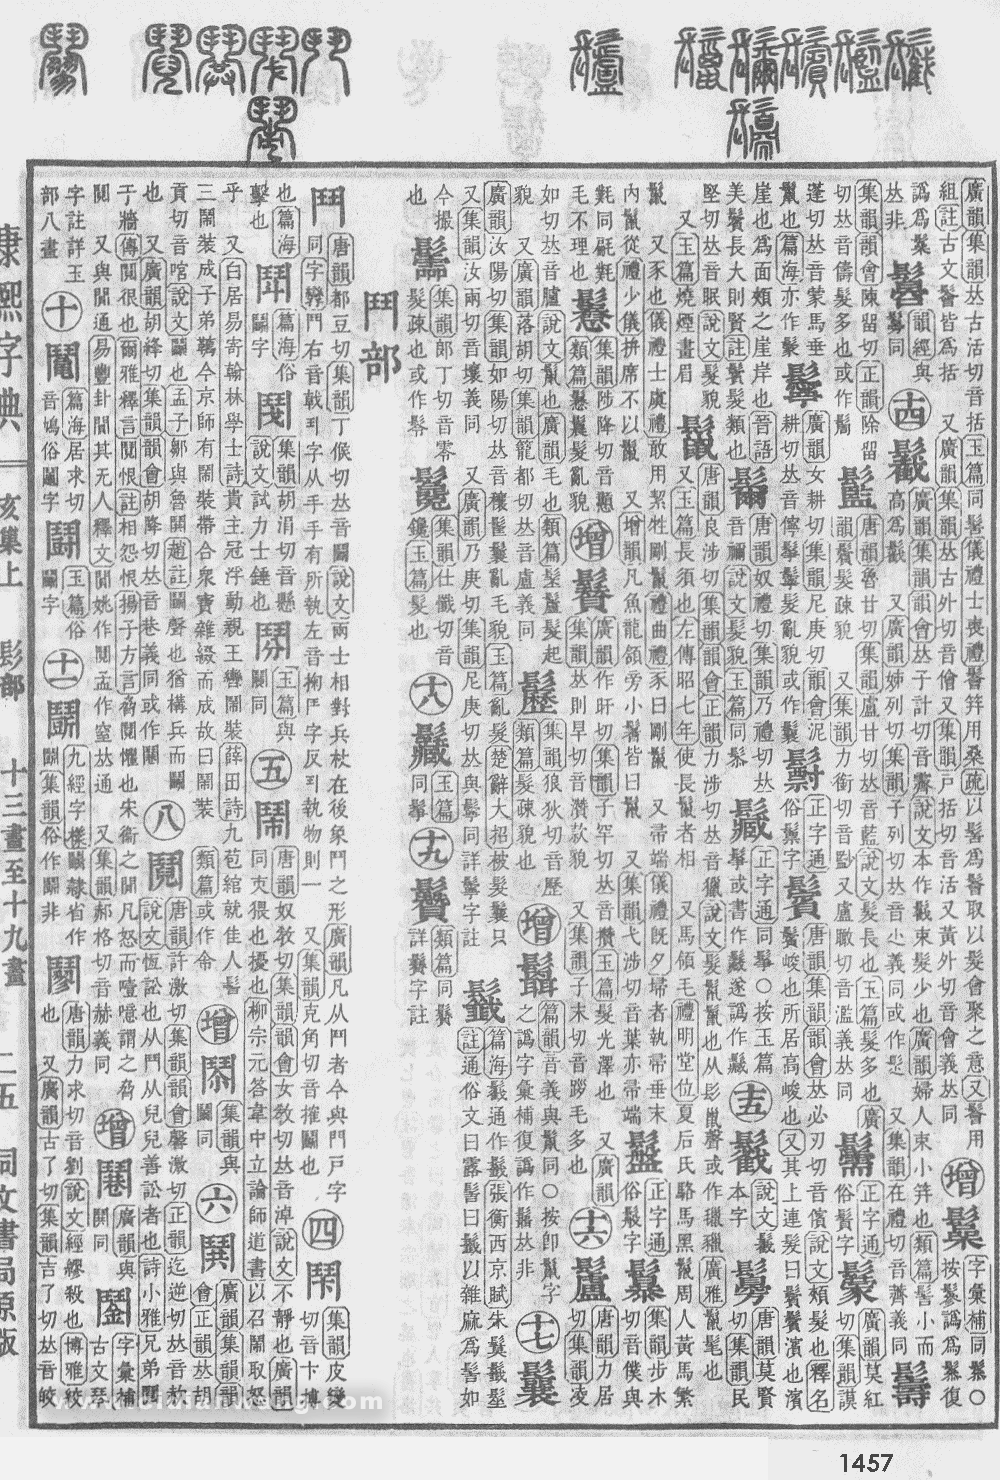 康熙字典掃描版第1457頁